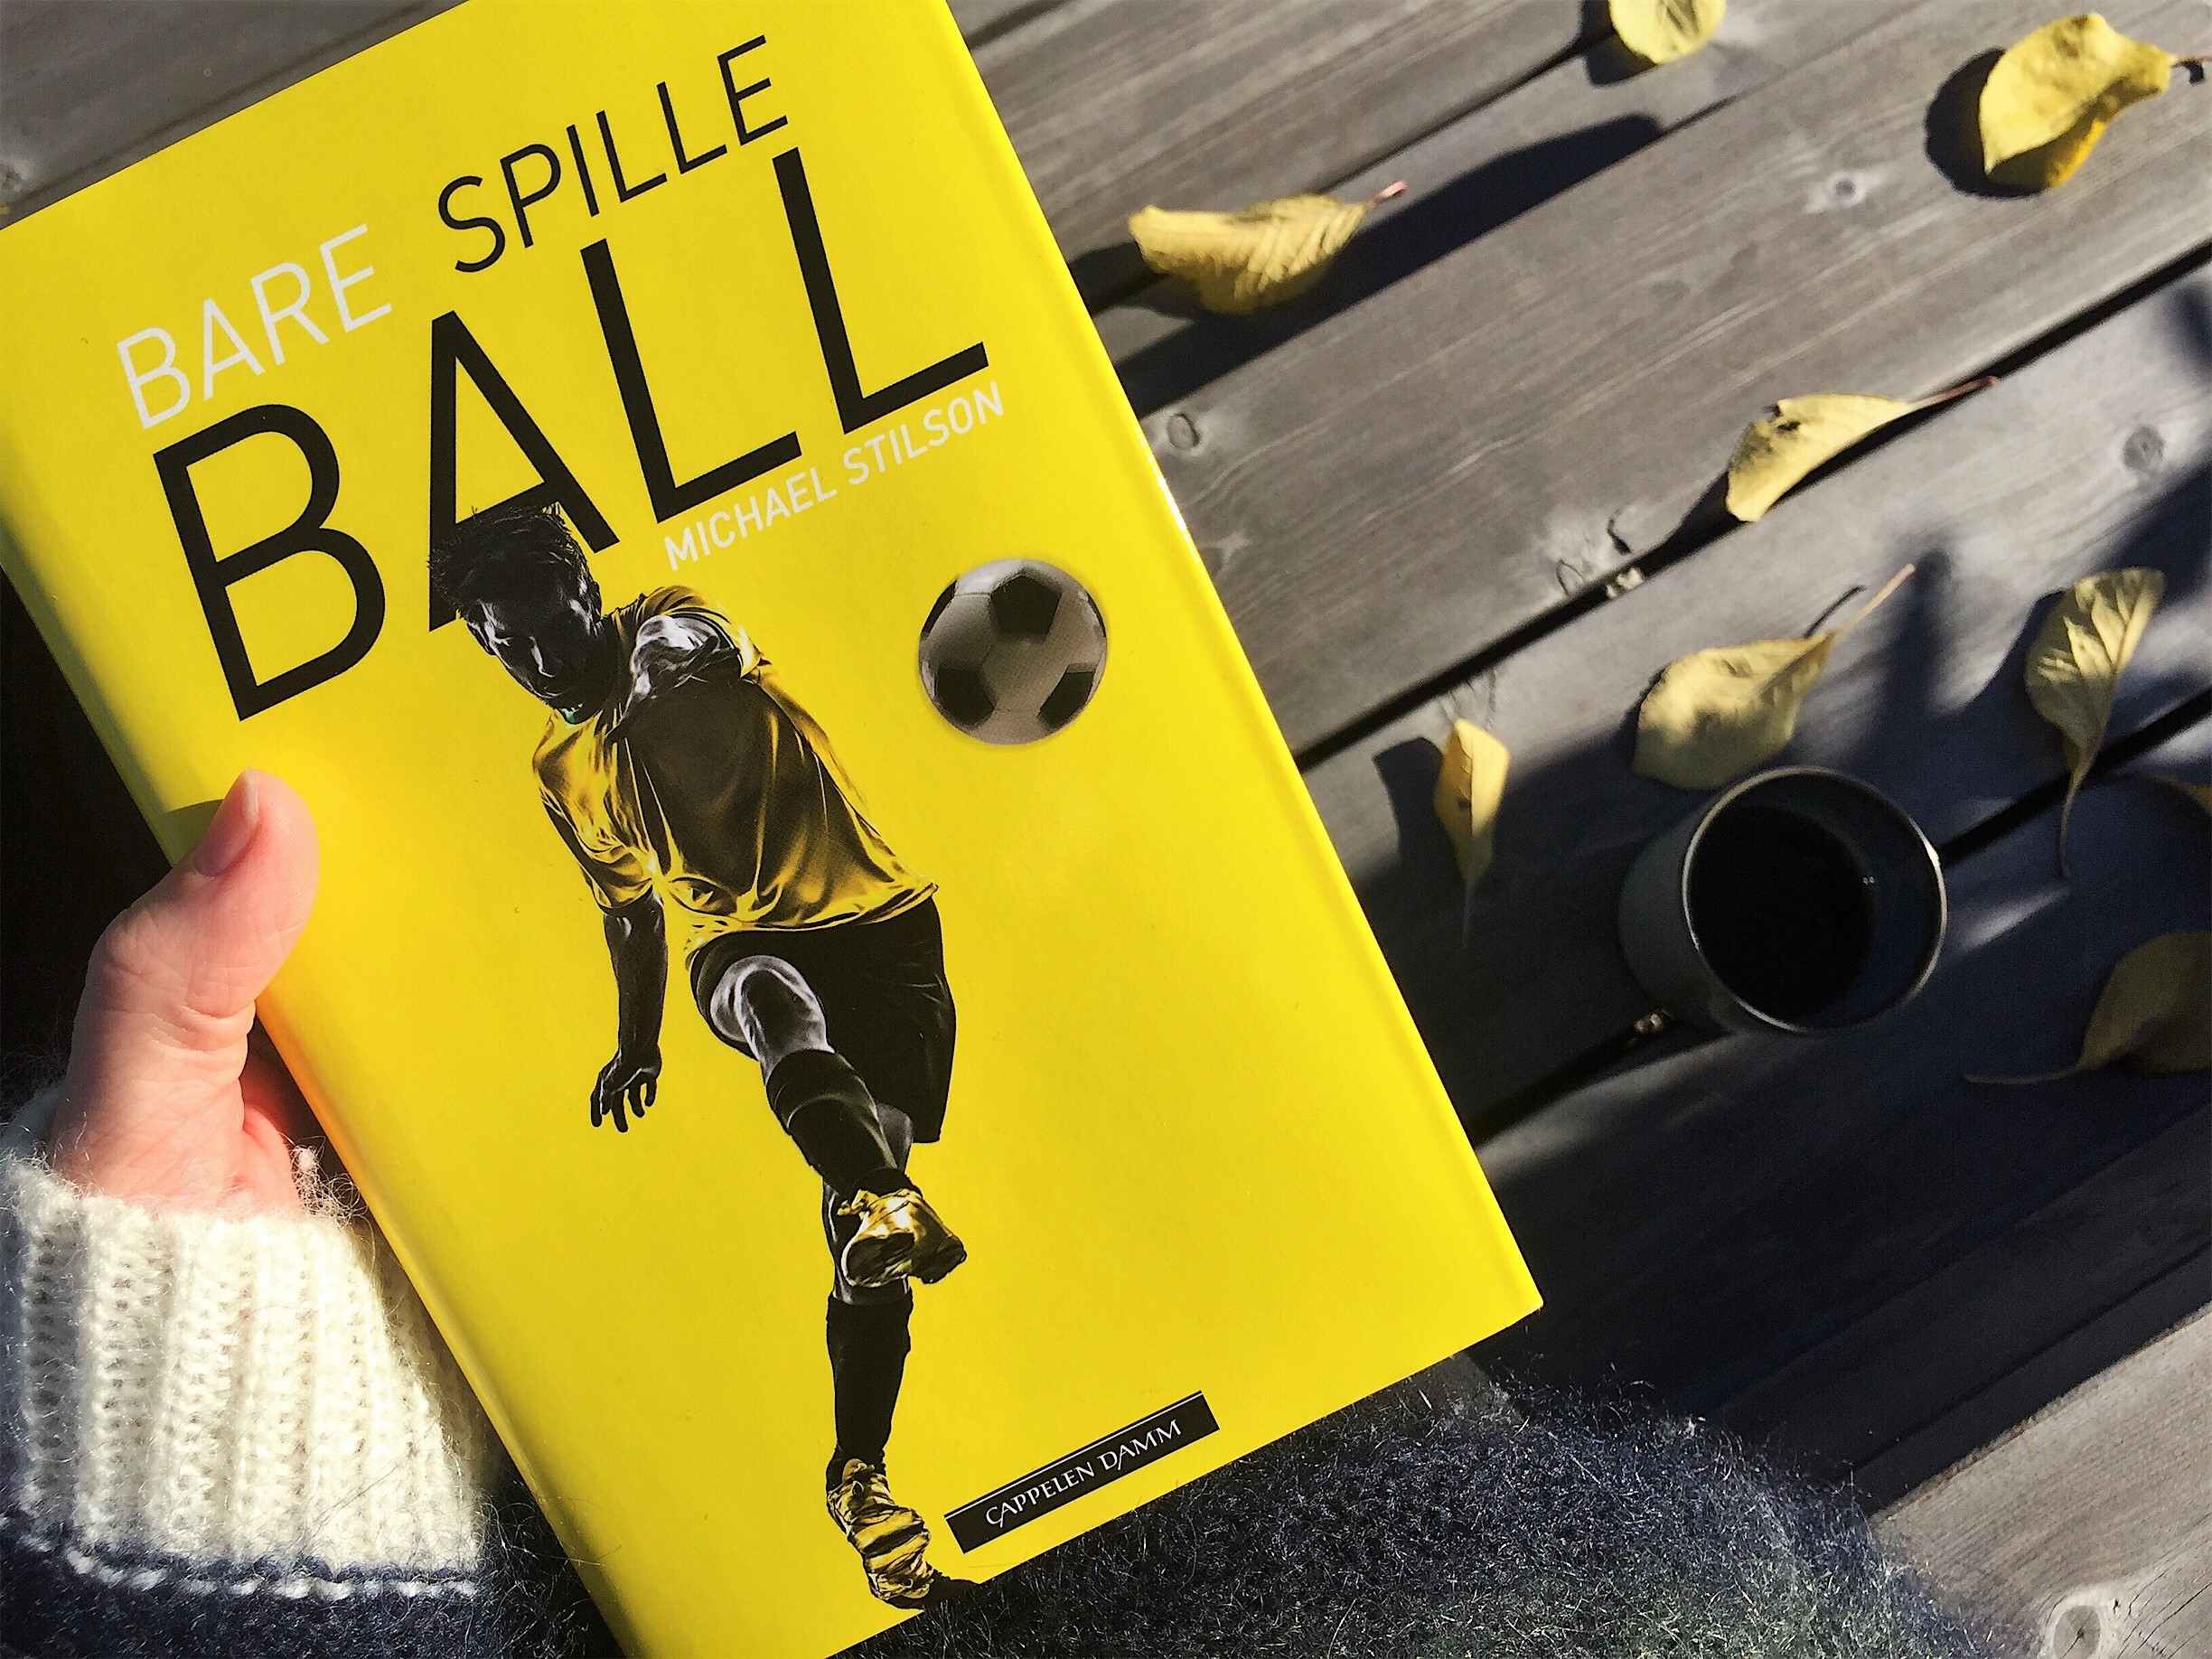 Michael Stilson: Bare spille ball